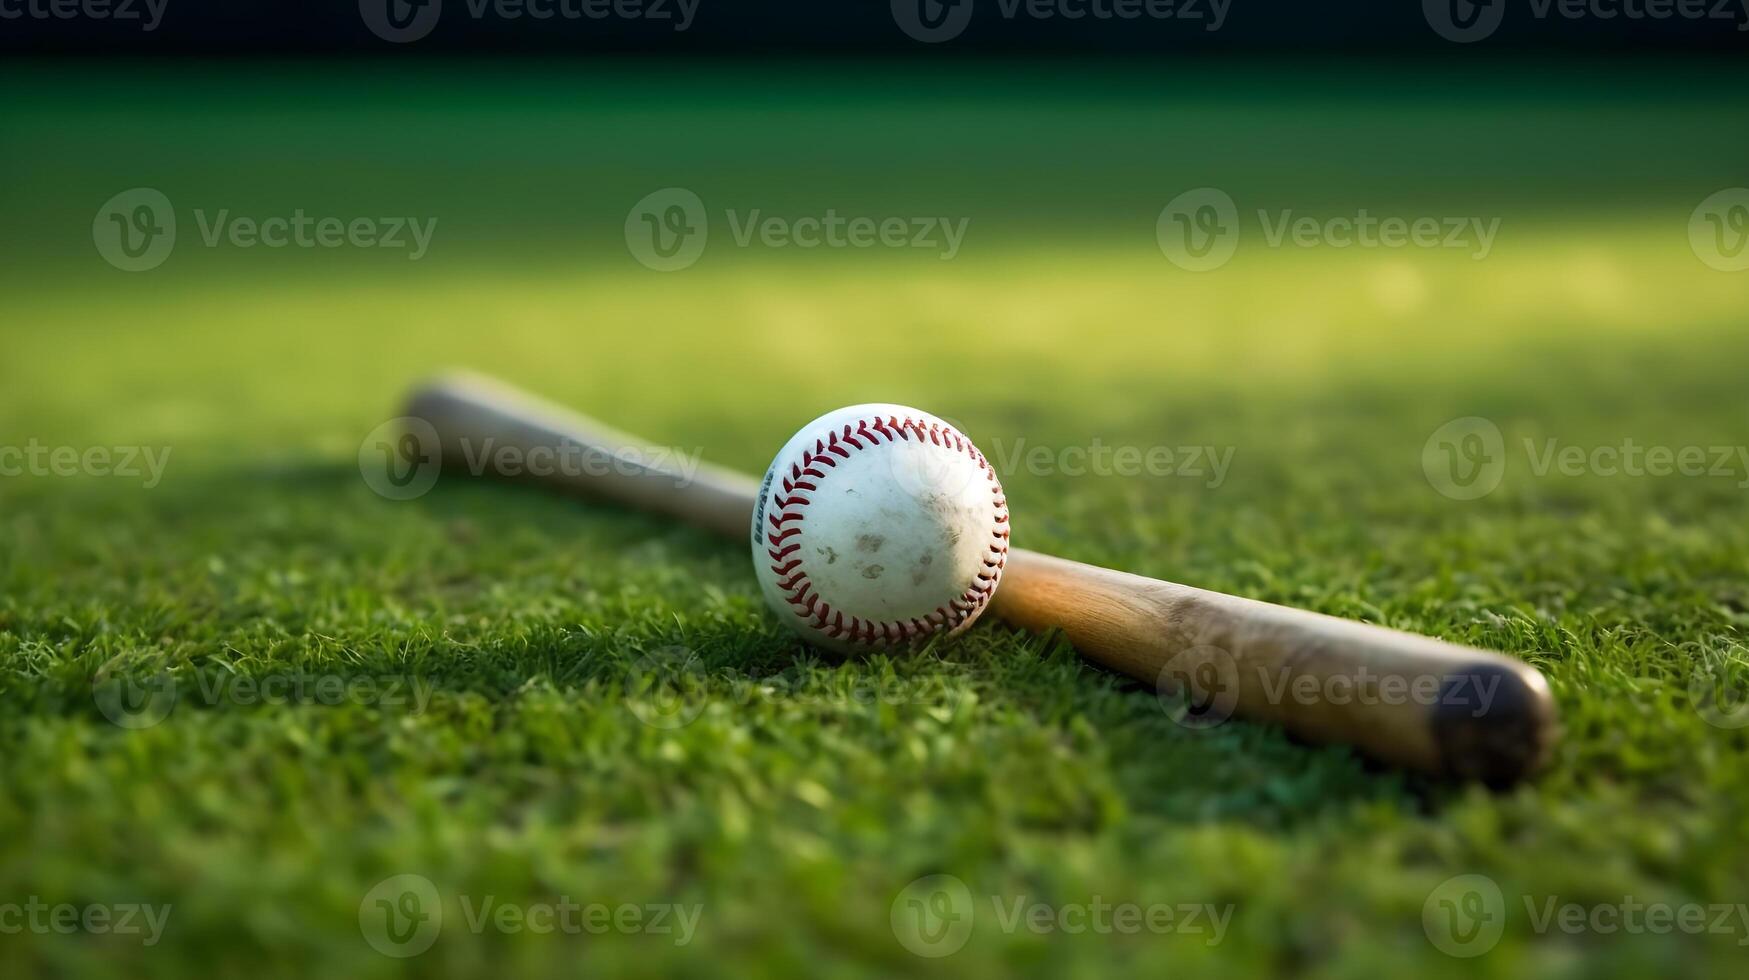 AI generated baseball and bat on grass field photo